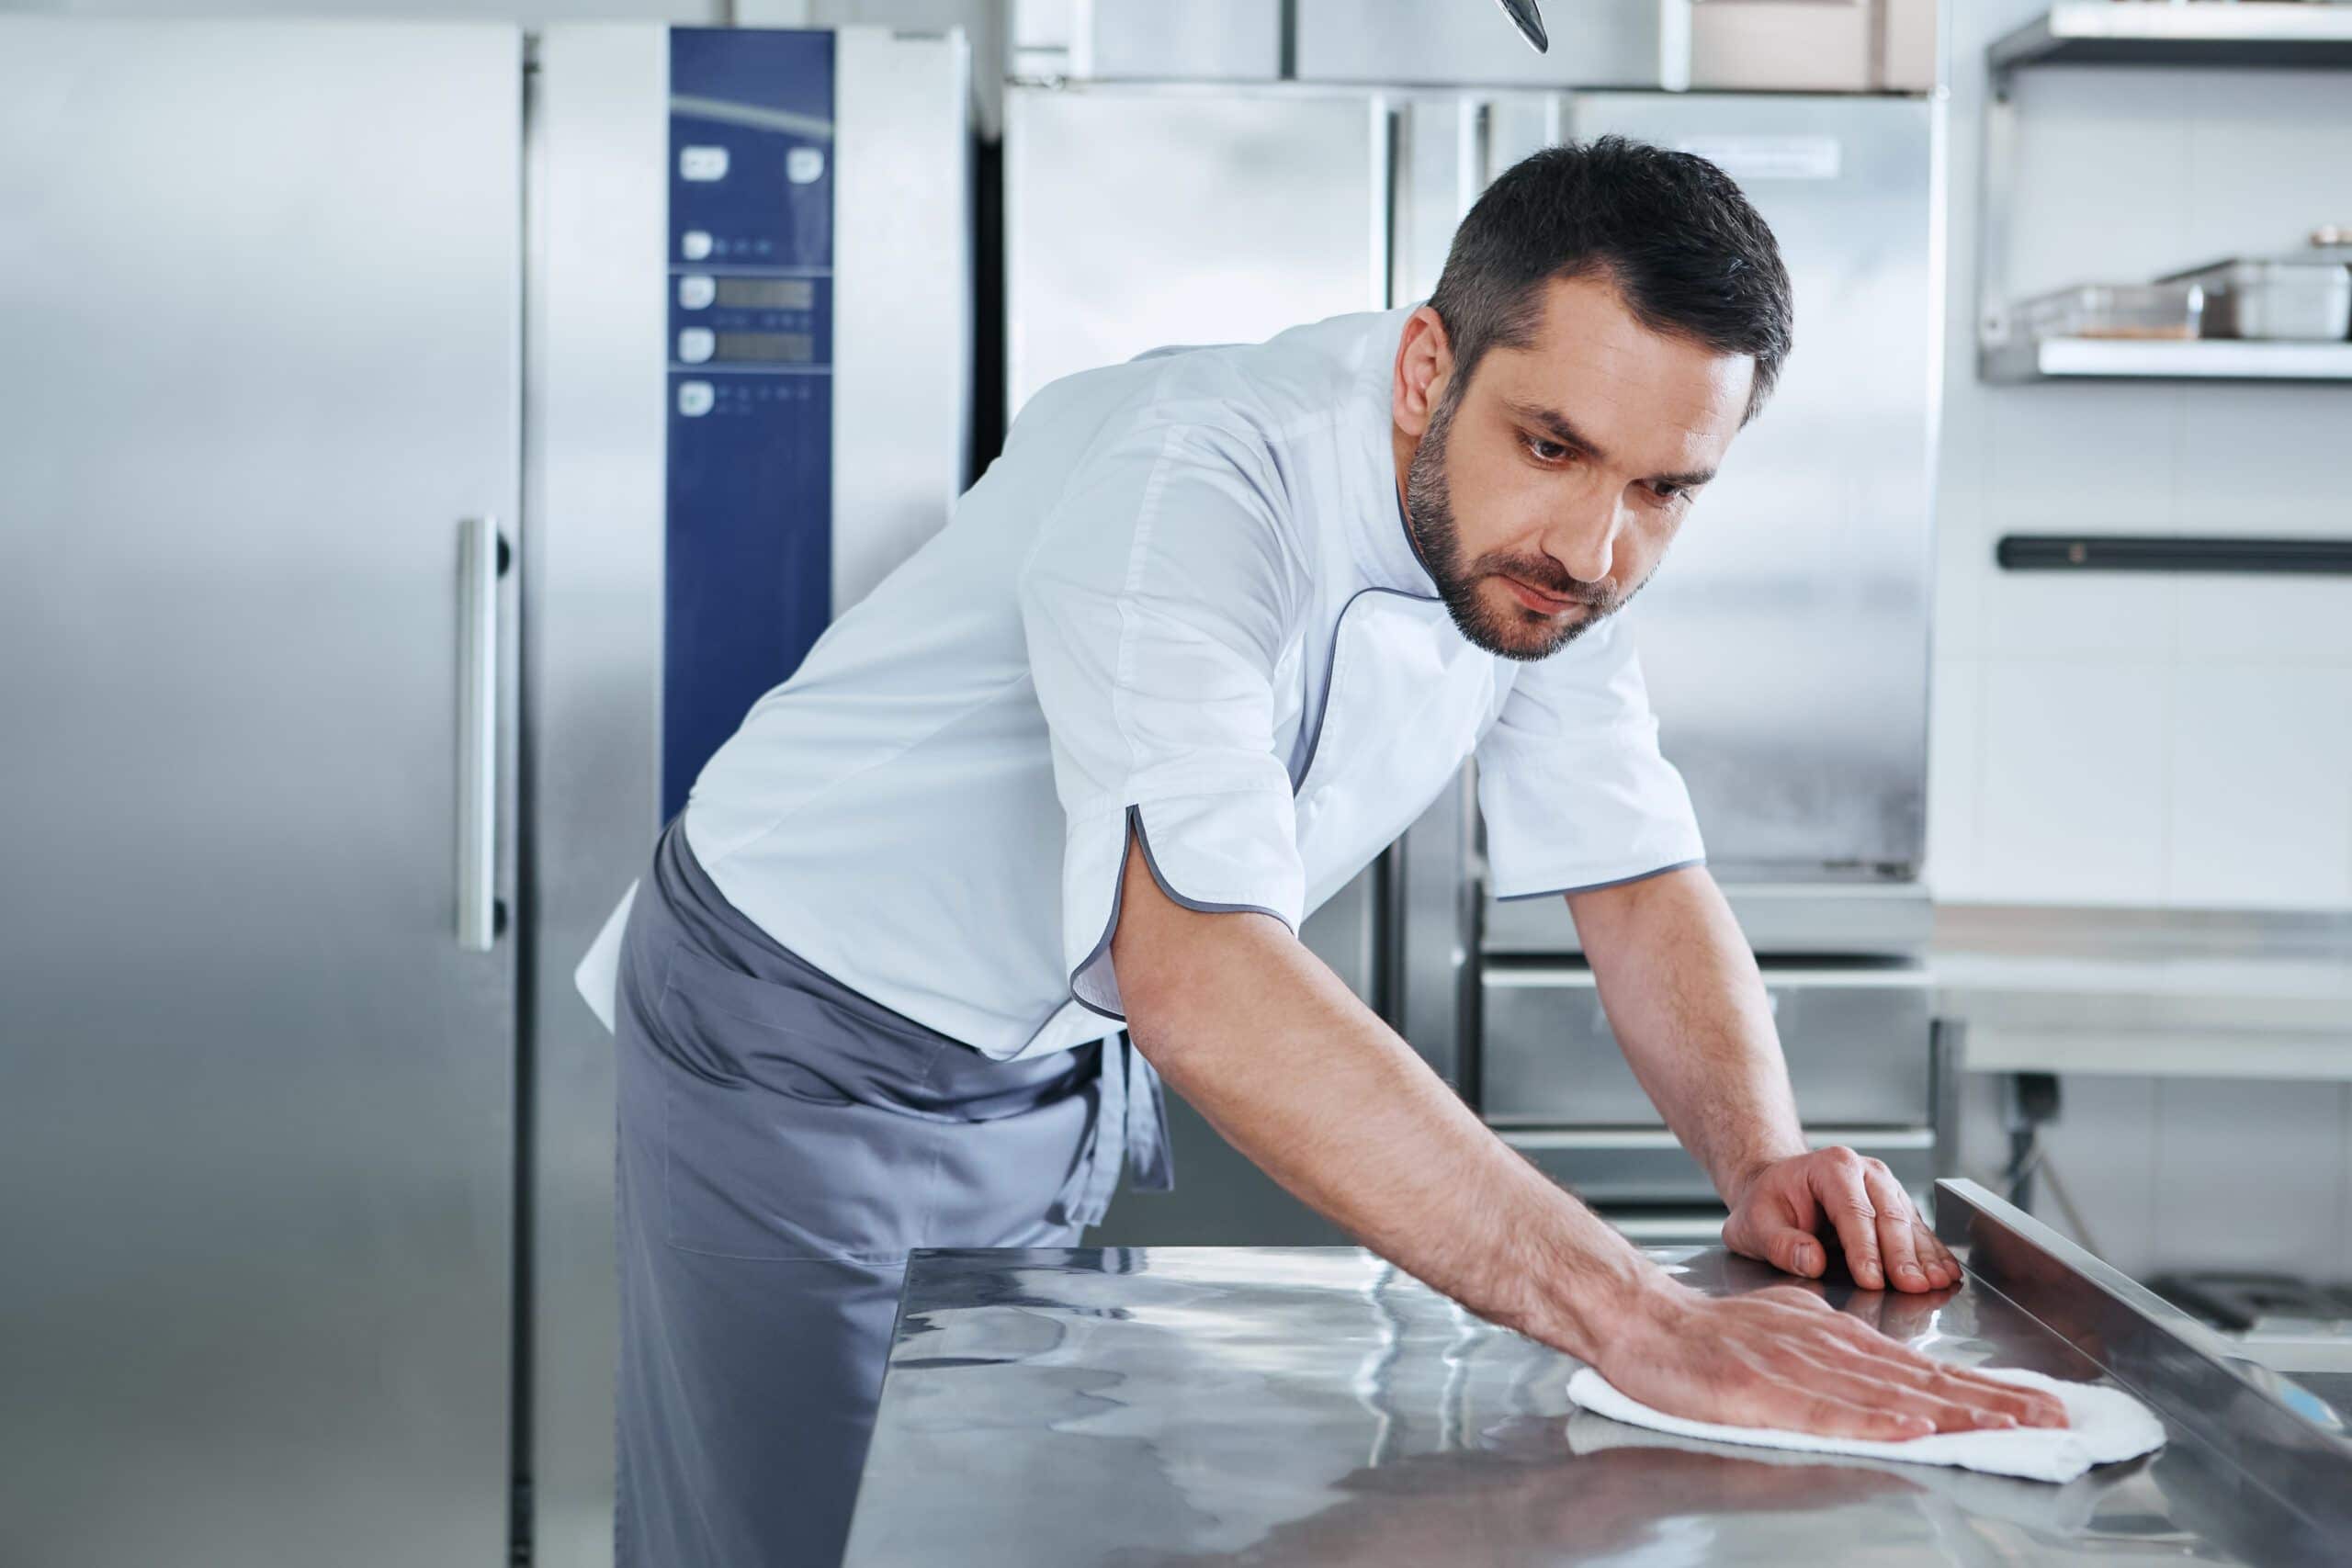 Koch reinigt Edelstahl Oberflächen in Küche